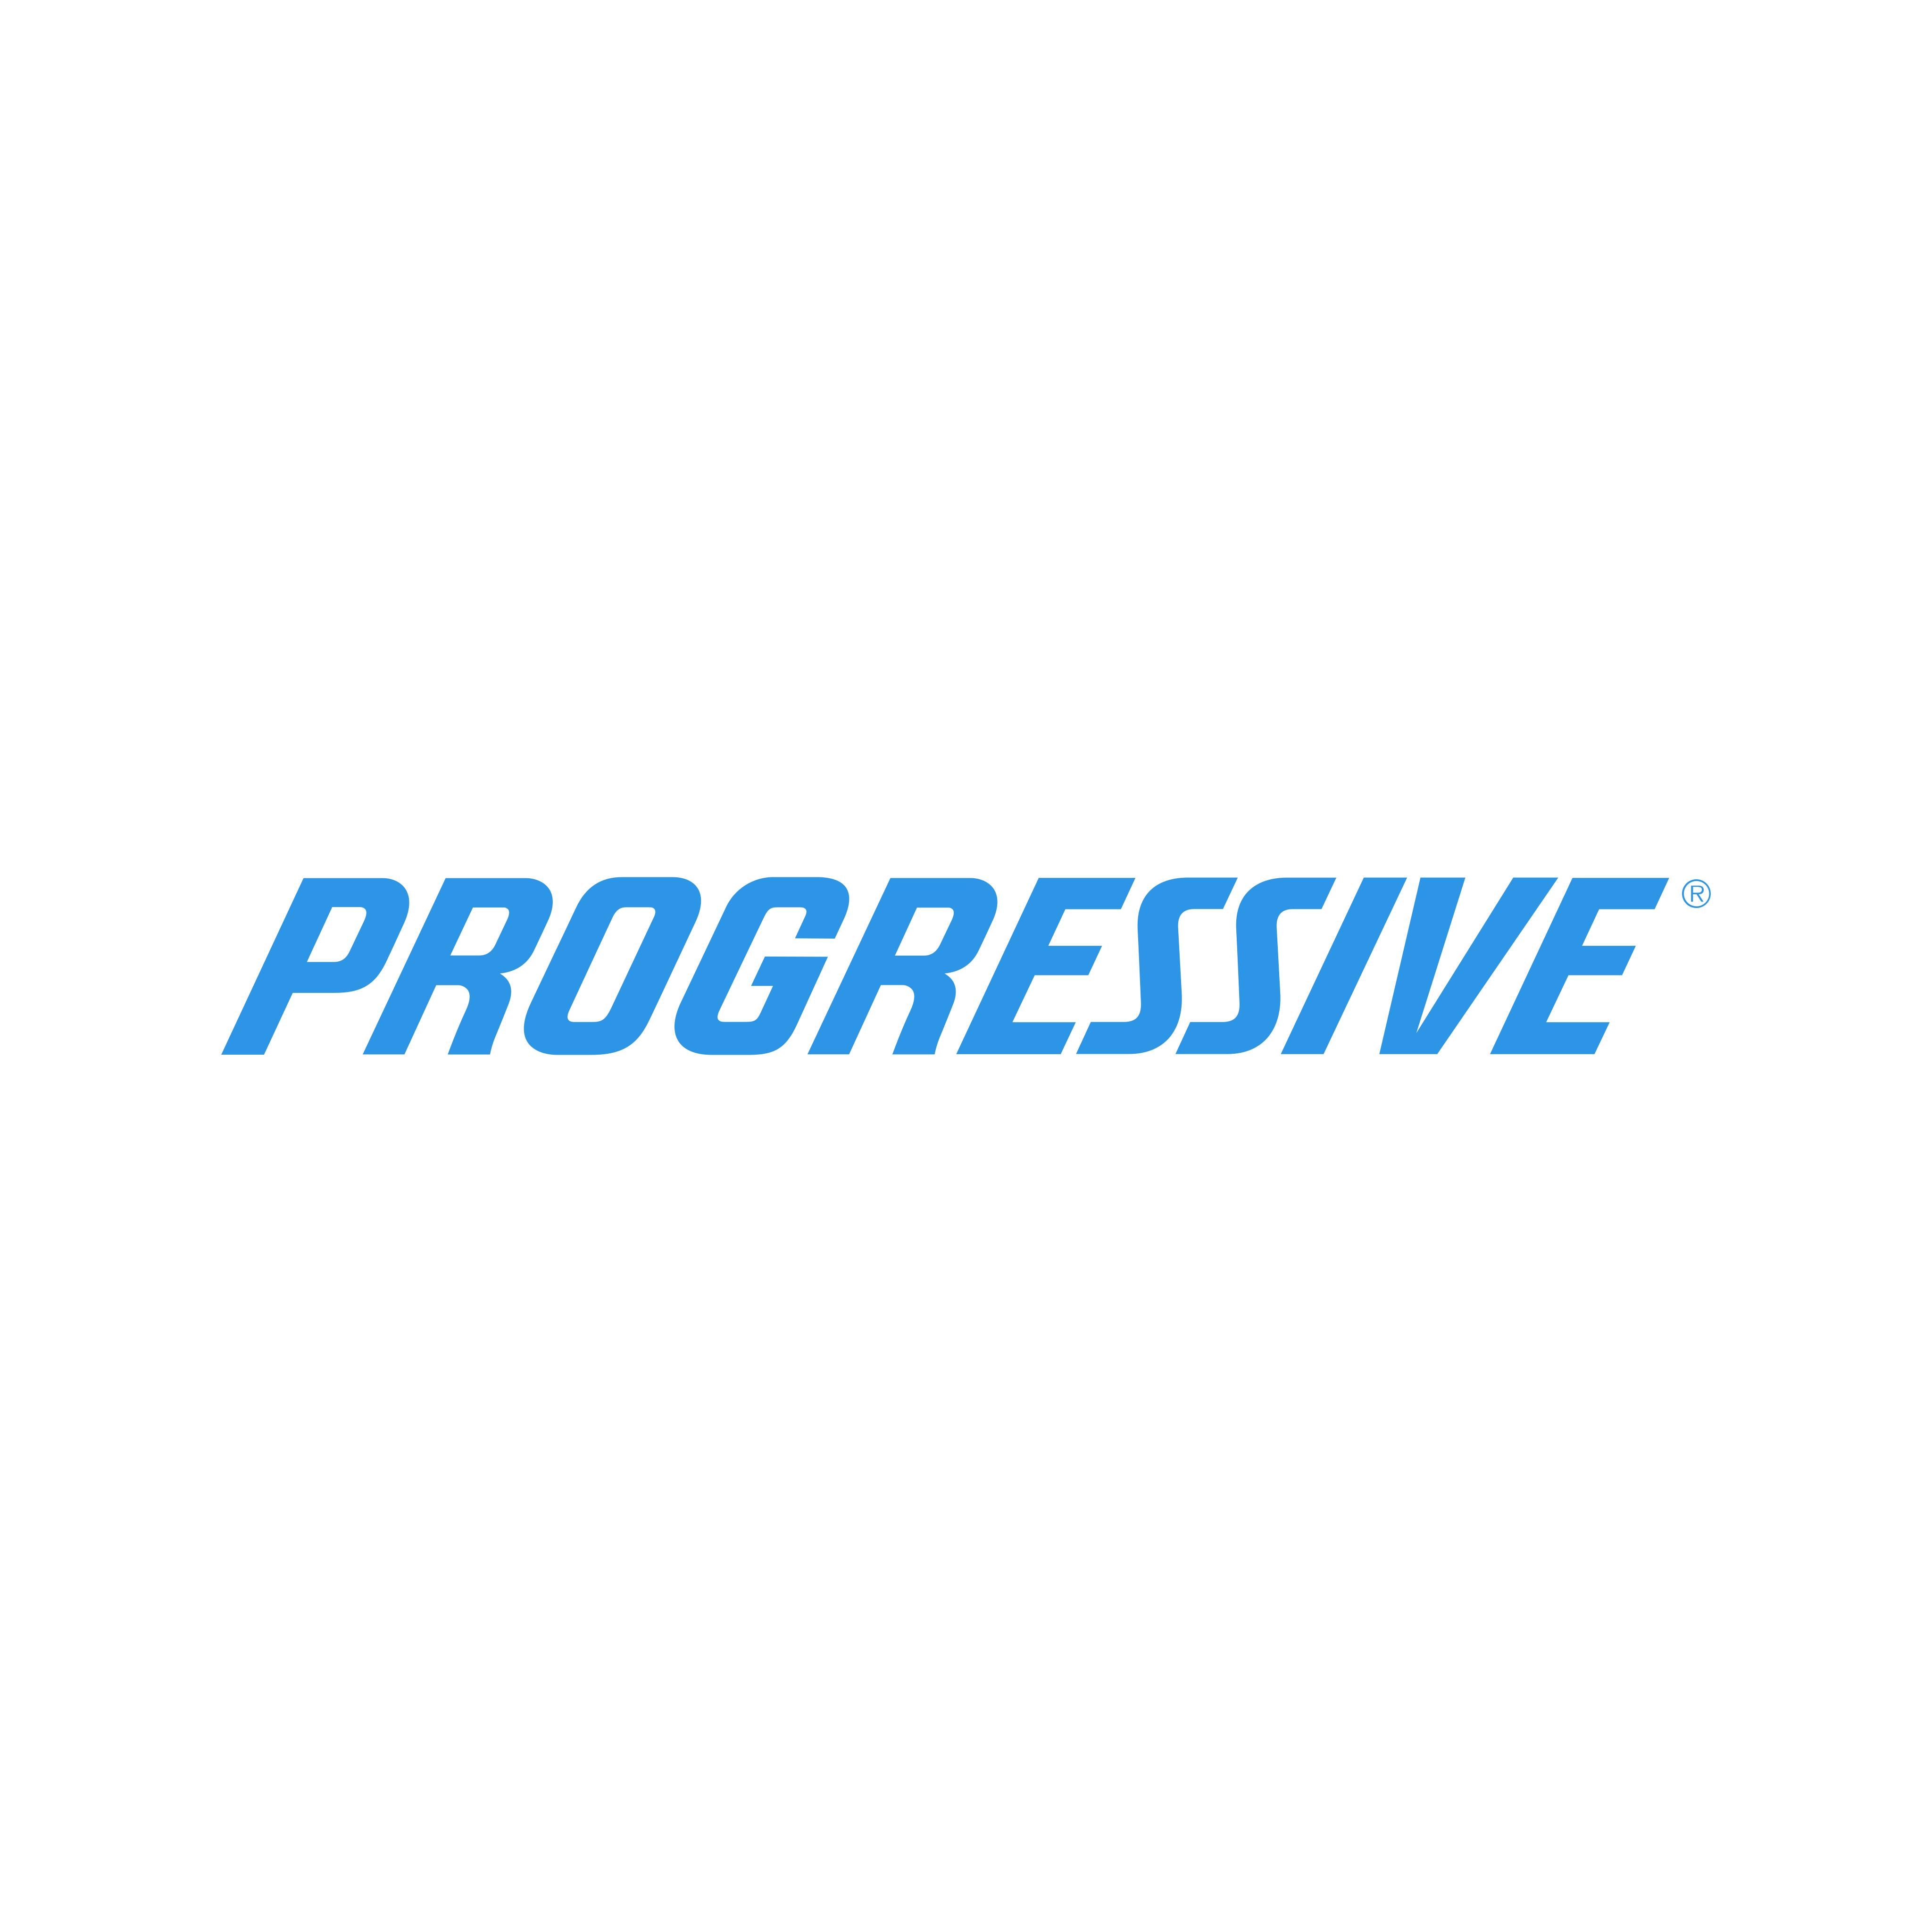 Progressive Logo PNG.